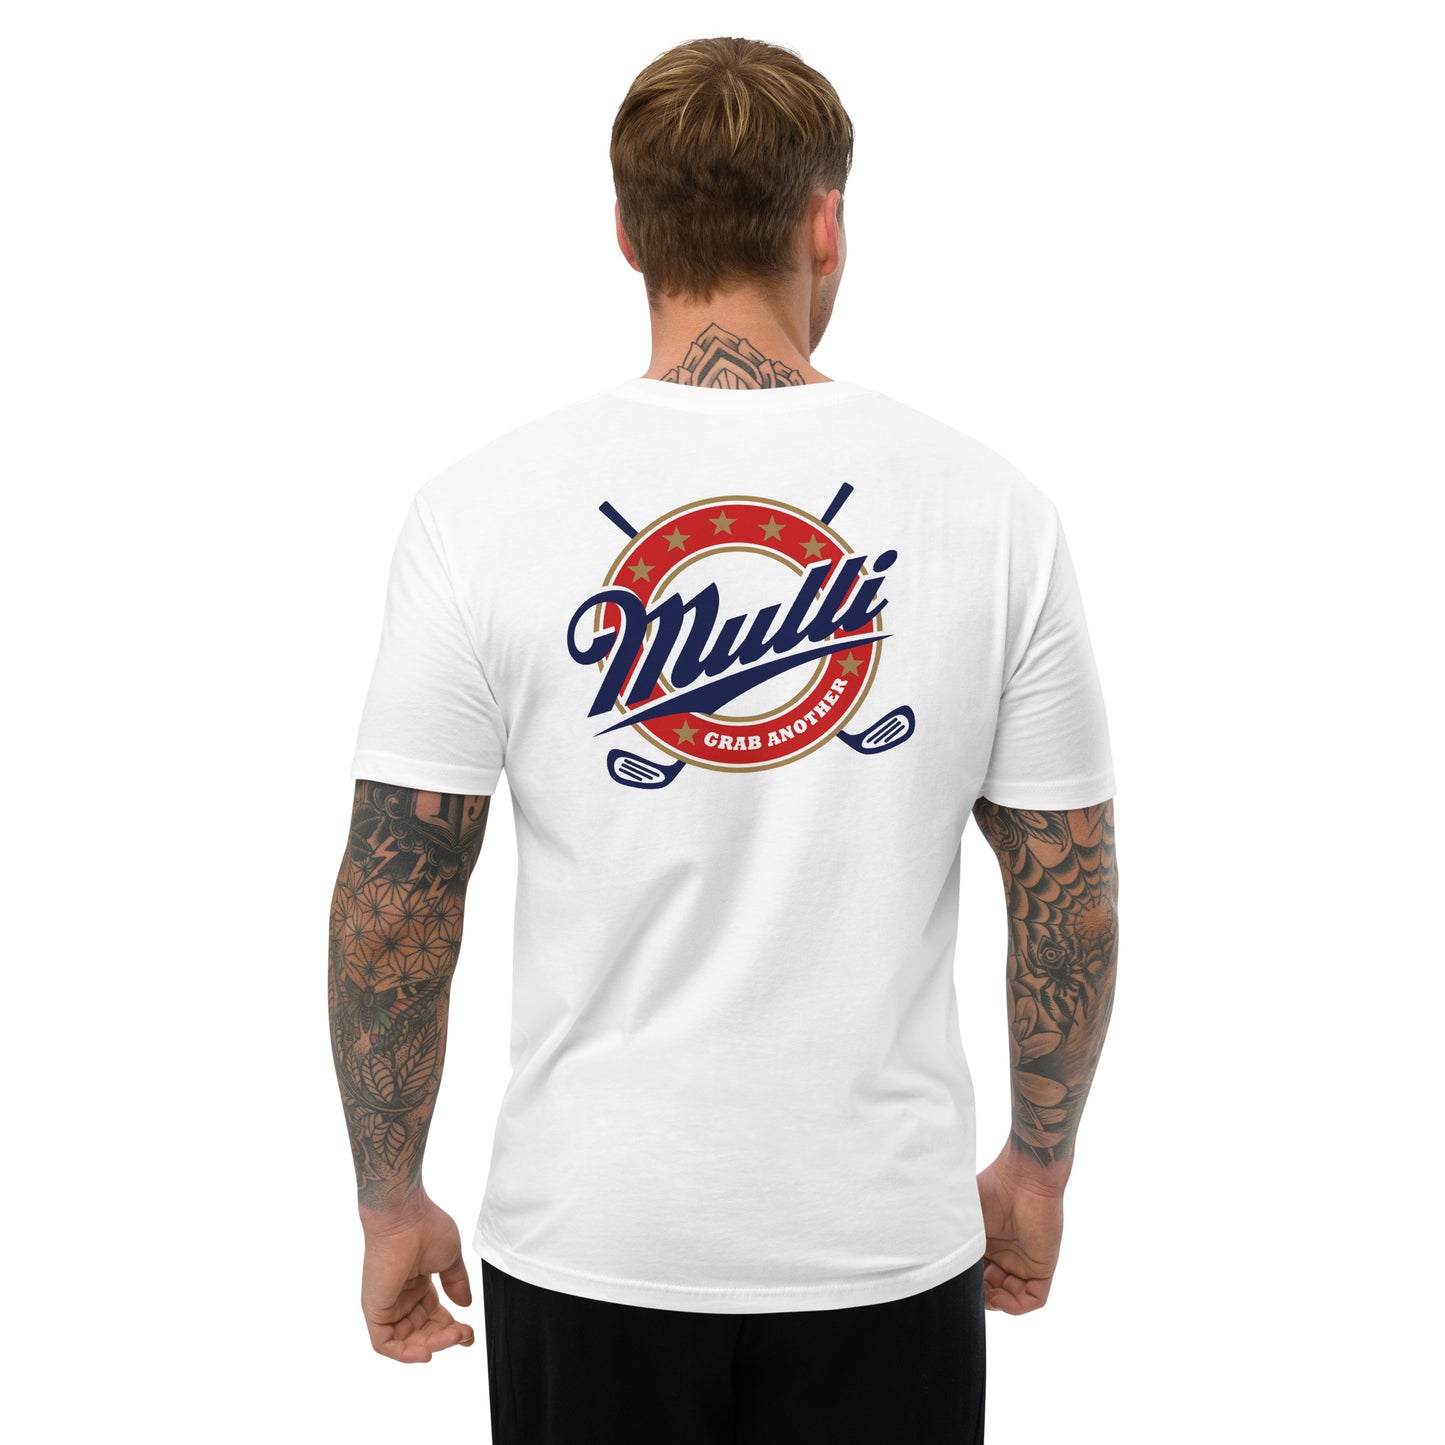 The Mulli Shirt - Short Sleeve T-shirt